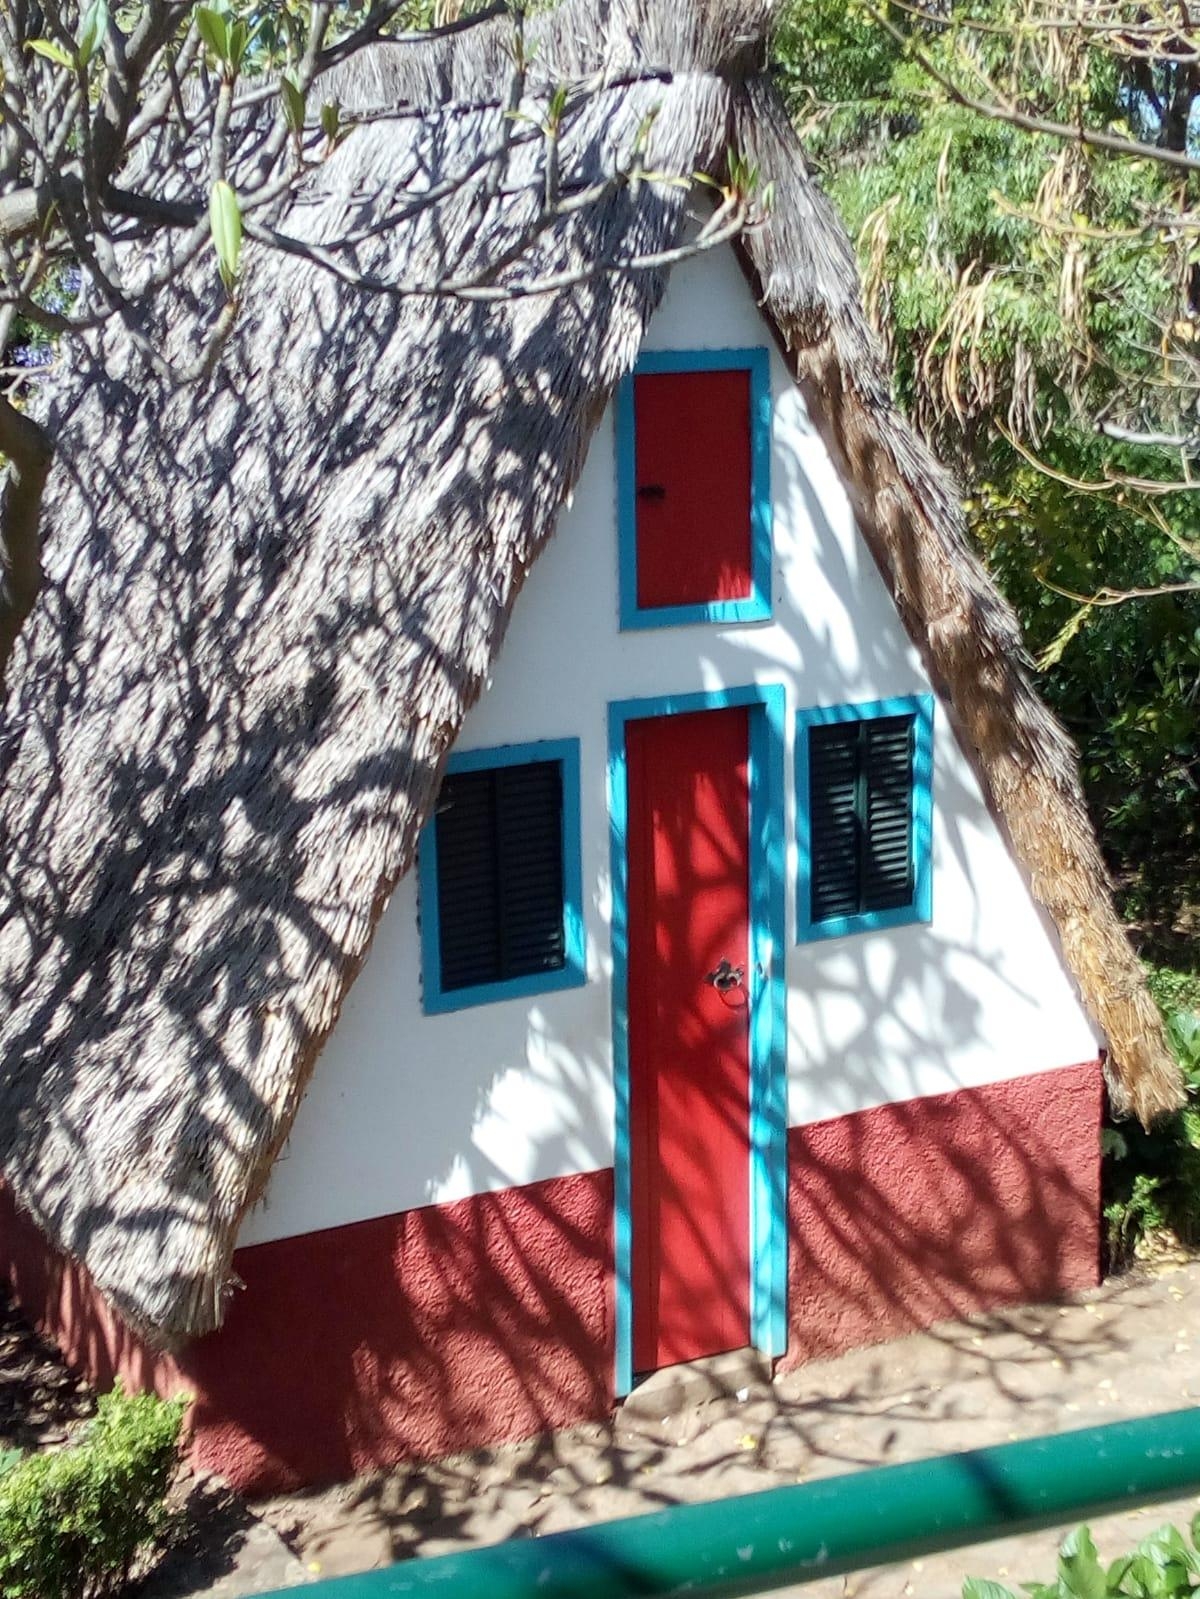 Wie wäre es mit so einem tiny house?! 🤭
#reise #travel #Urlaub #madeira